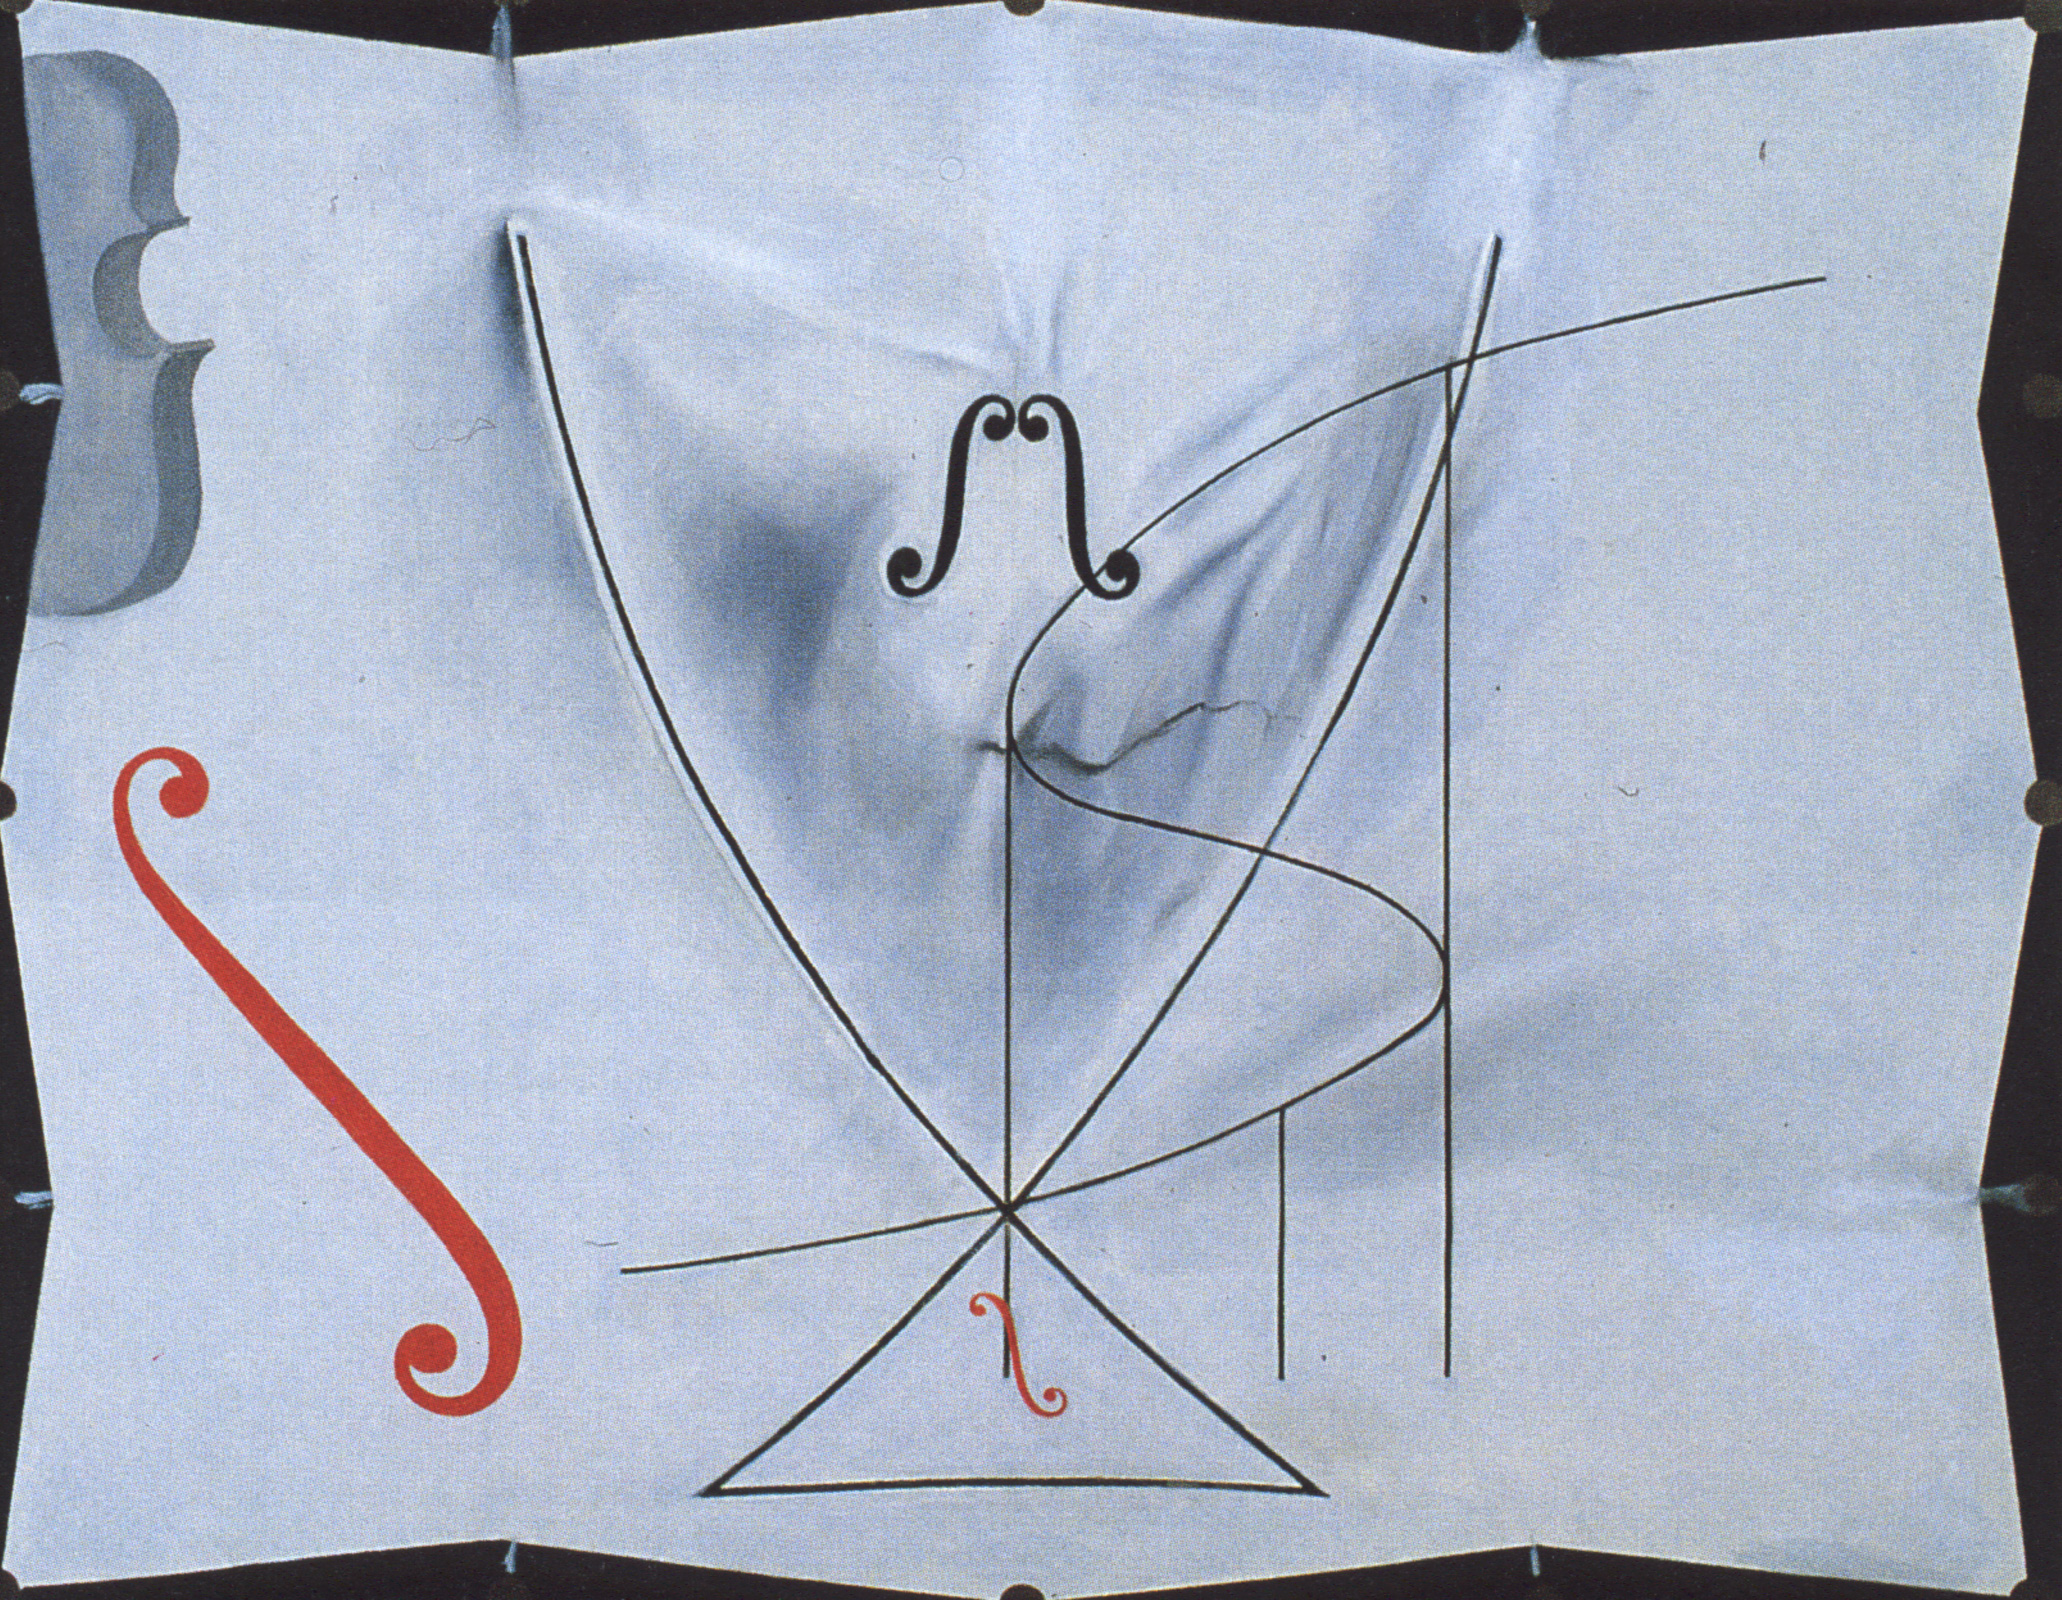 燕子的尾巴 by Salvador Dalí - 西元1983 - 73 x 92.2 公分 